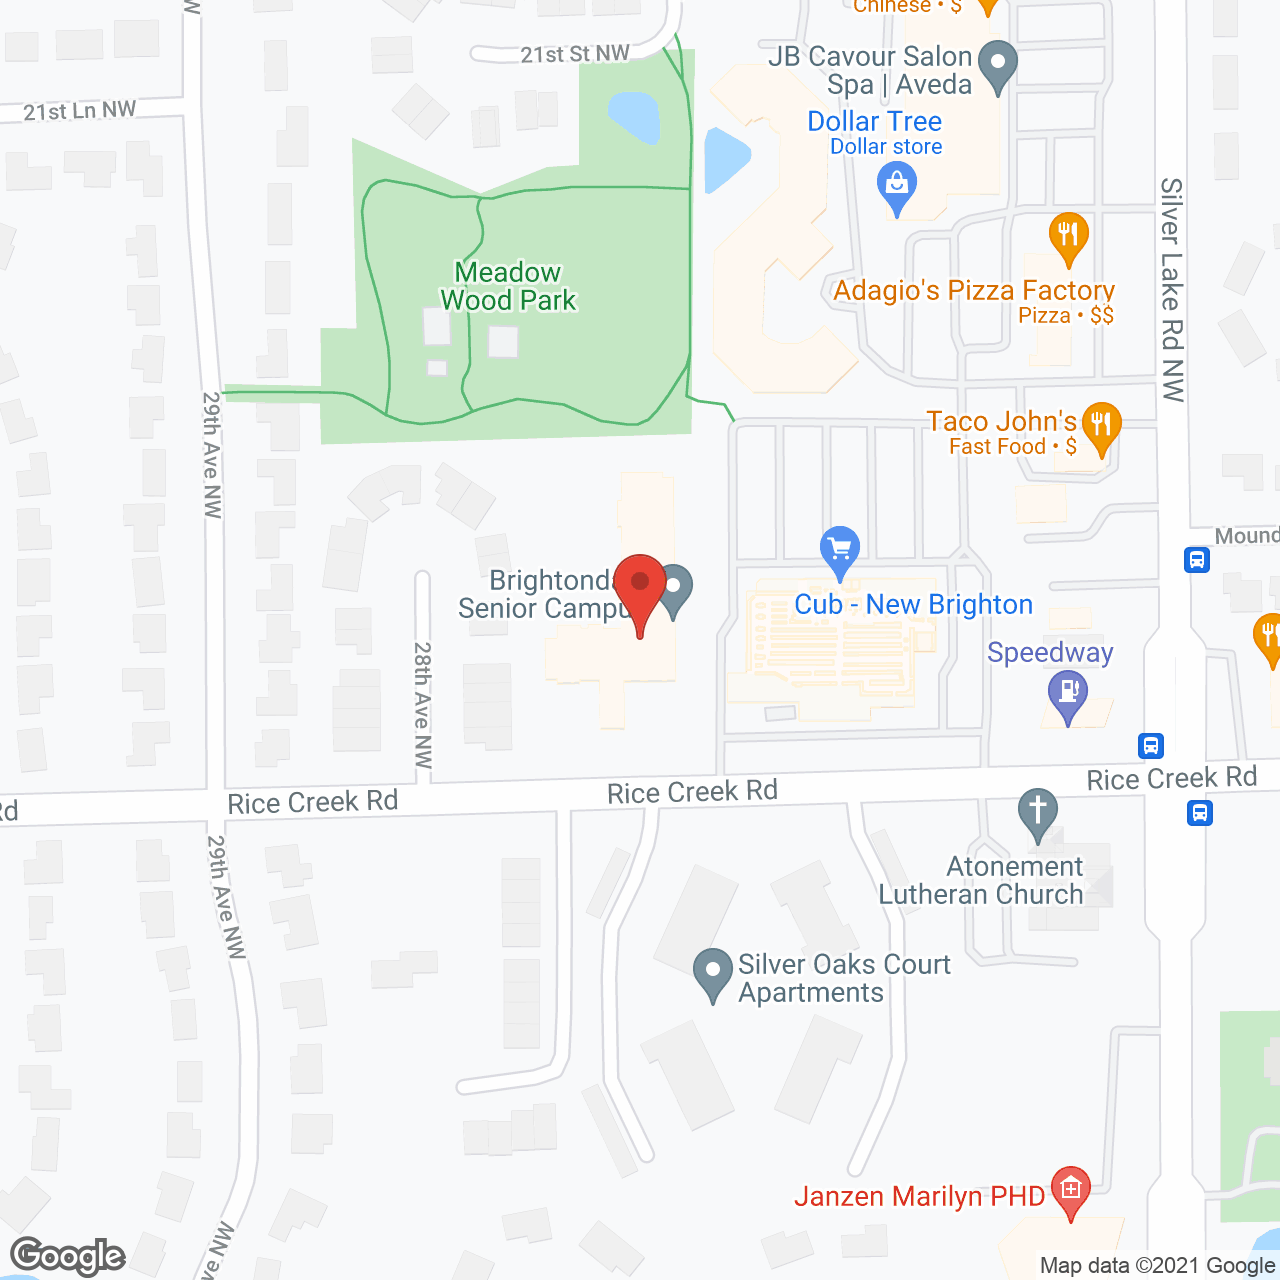 Brightondale Senior Campus in google map